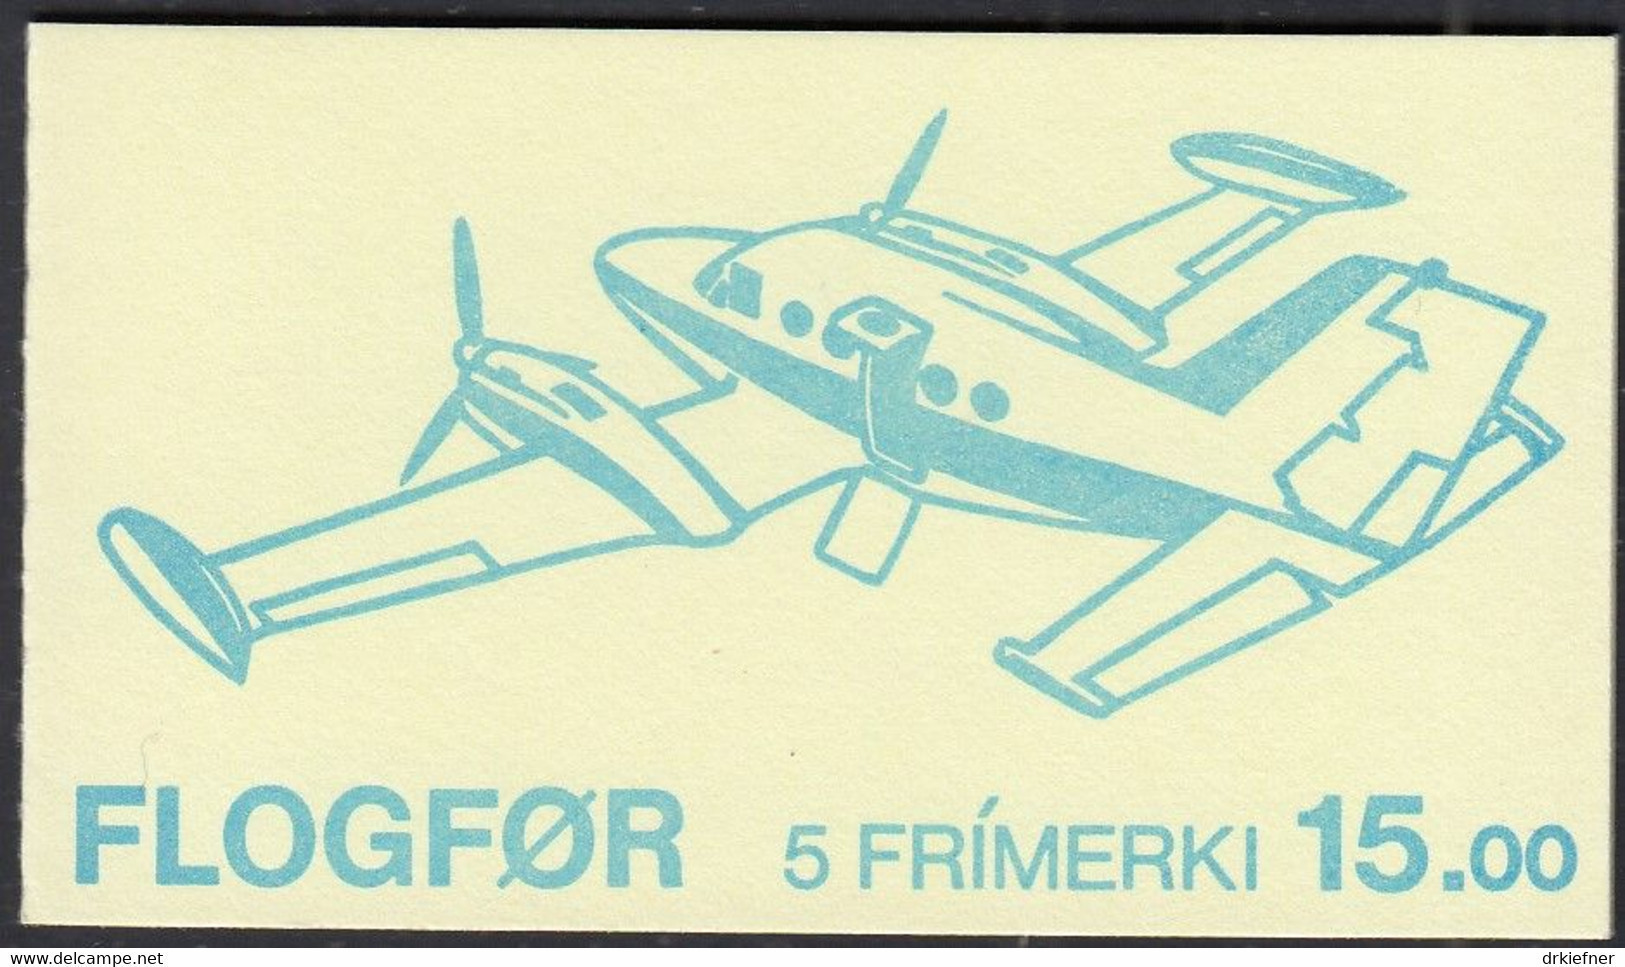 FÄRÖER Markenheftchen MH 3 Mit 125-129, Postfrisch **, Flugzeuge, 1985 - Färöer Inseln